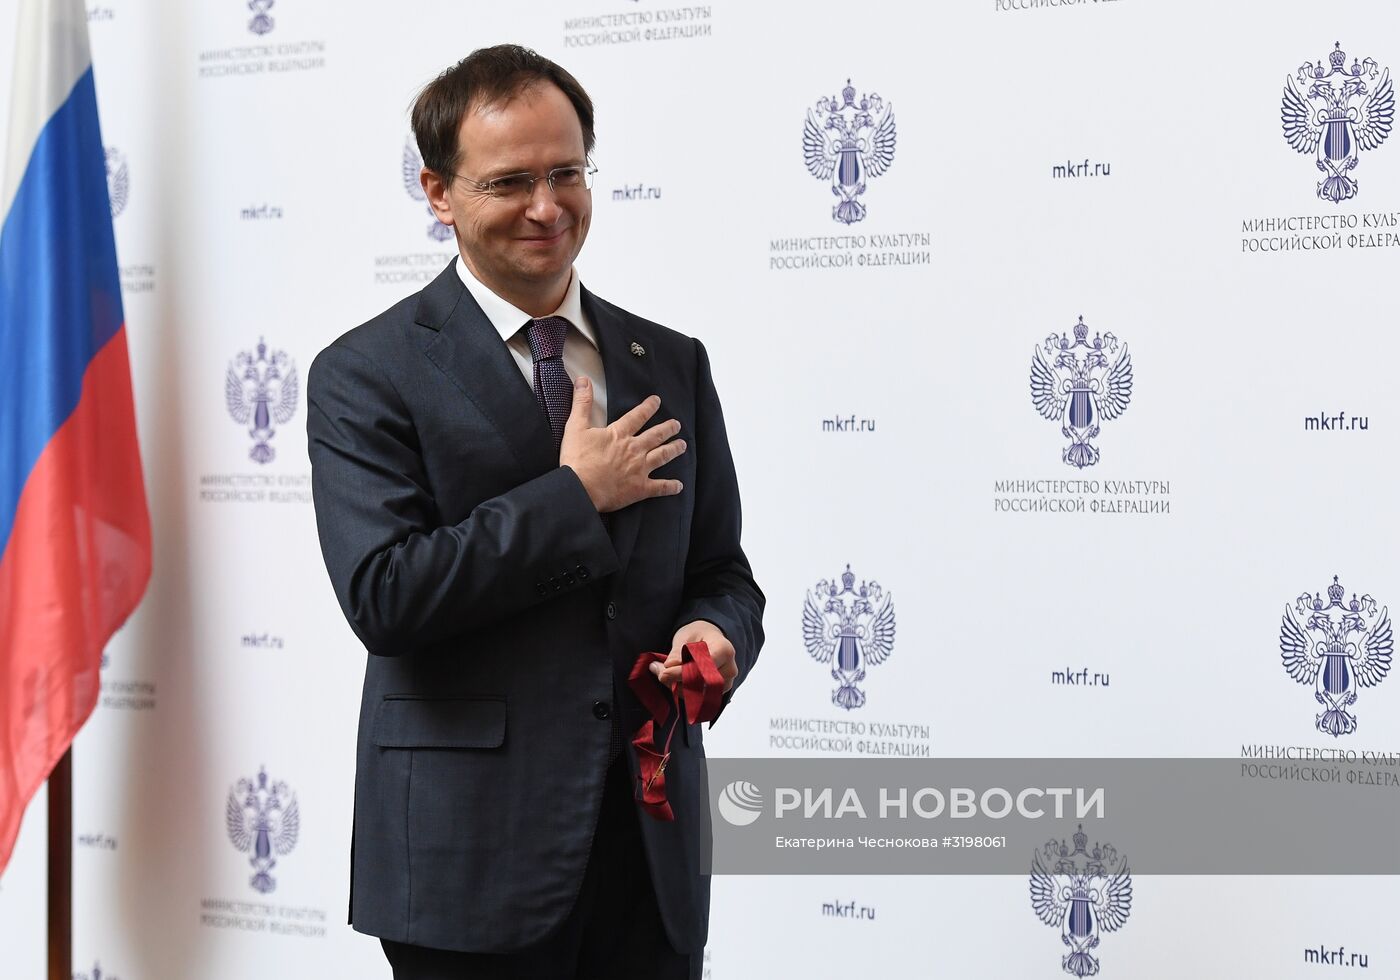 Награждения деятелей культуры и искусства государственными и ведомственными наградами Минкультуры России